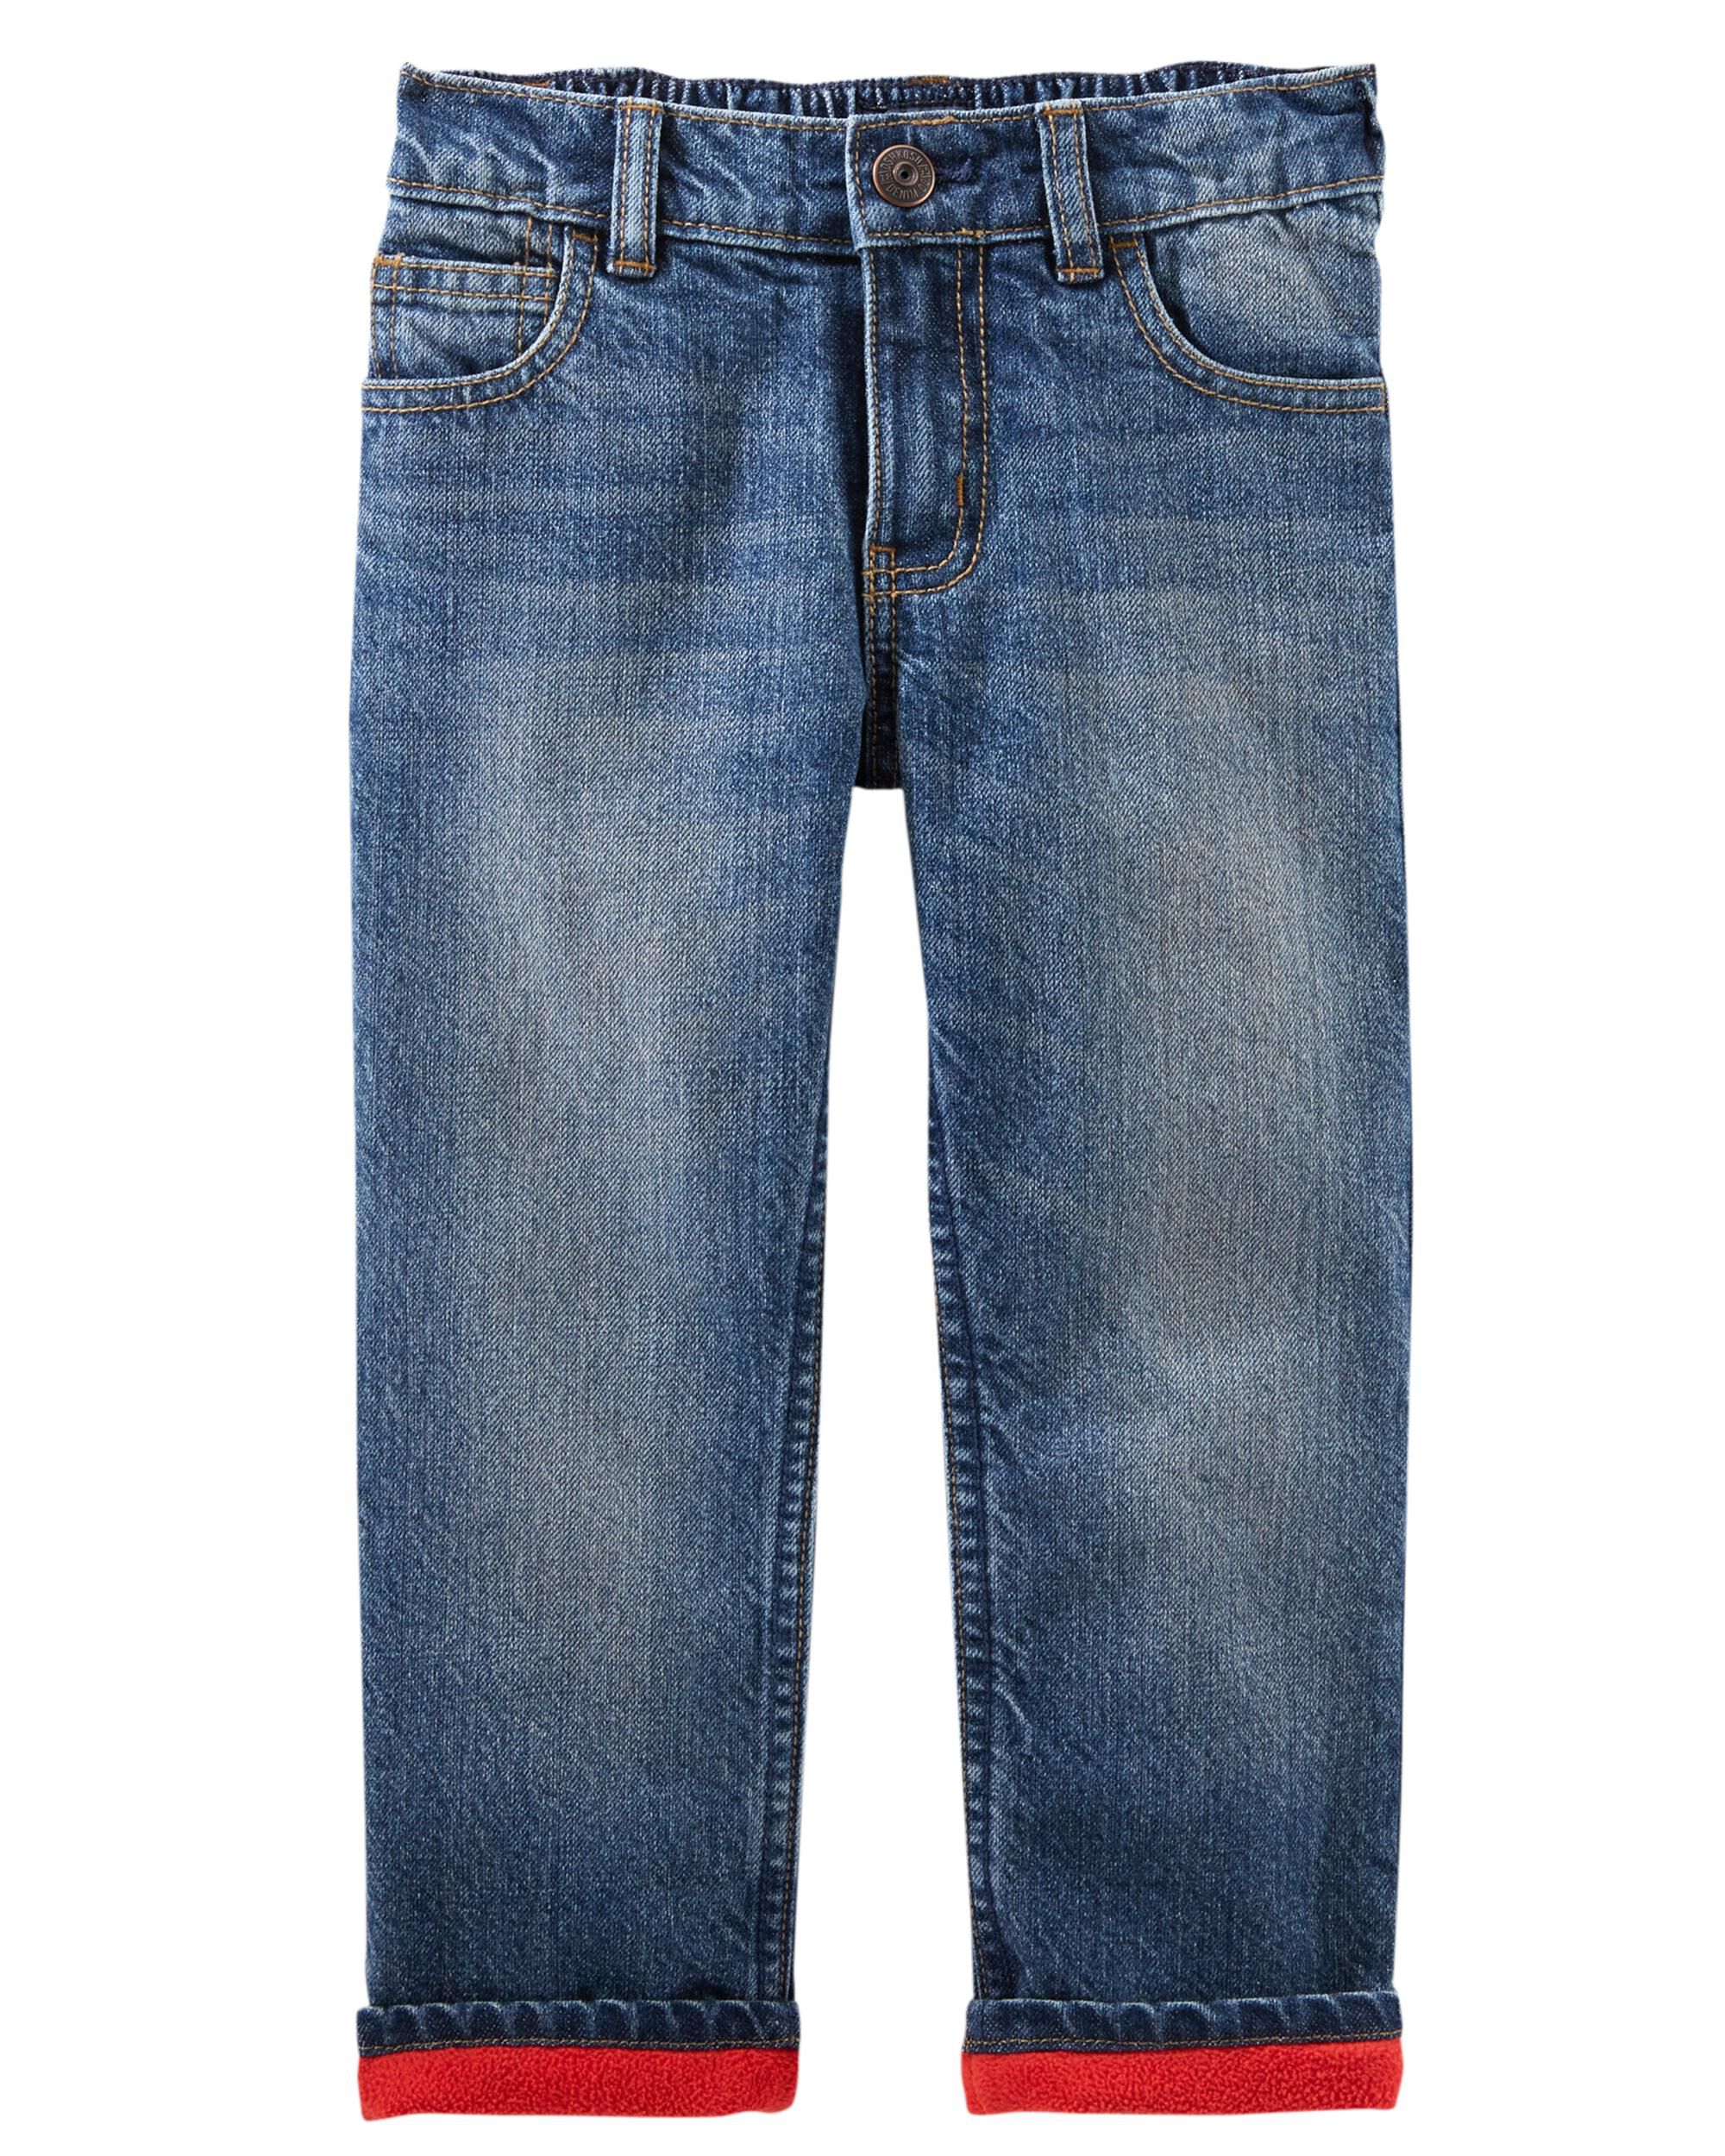 key fleece lined jeans